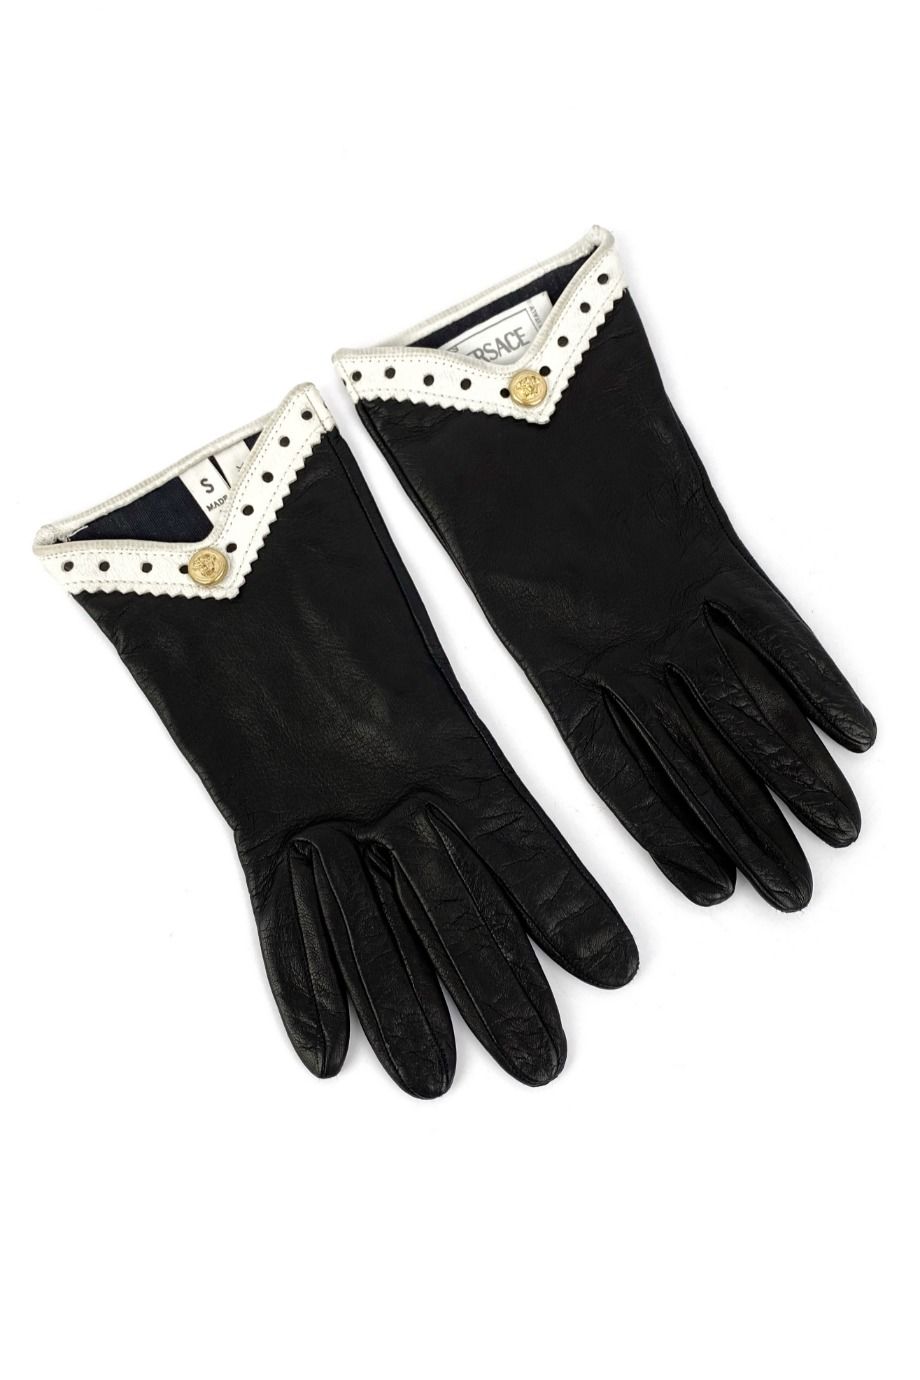 image 2 Кожаные перчатки чёрного цвета с белой окантовкой